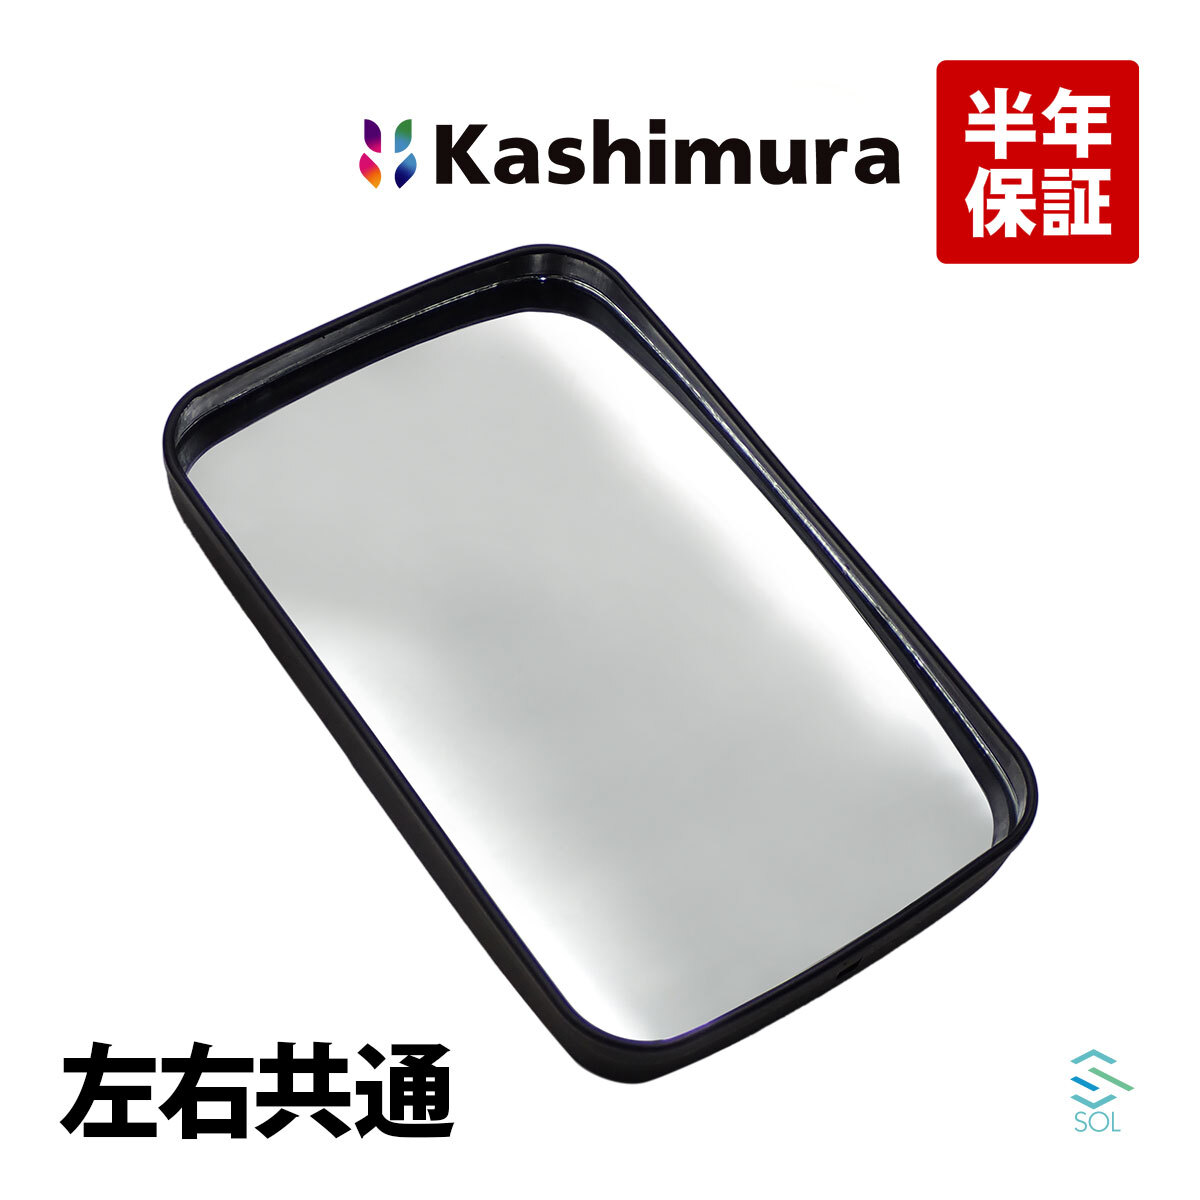 カシムラ純正品 Kashimura KM60-13 サイドミラー 左右共通 片側 タイタン ターボ ダンプ ロング ワイド ワイドダンプ WGLAT WGL4T WGLAM_画像1